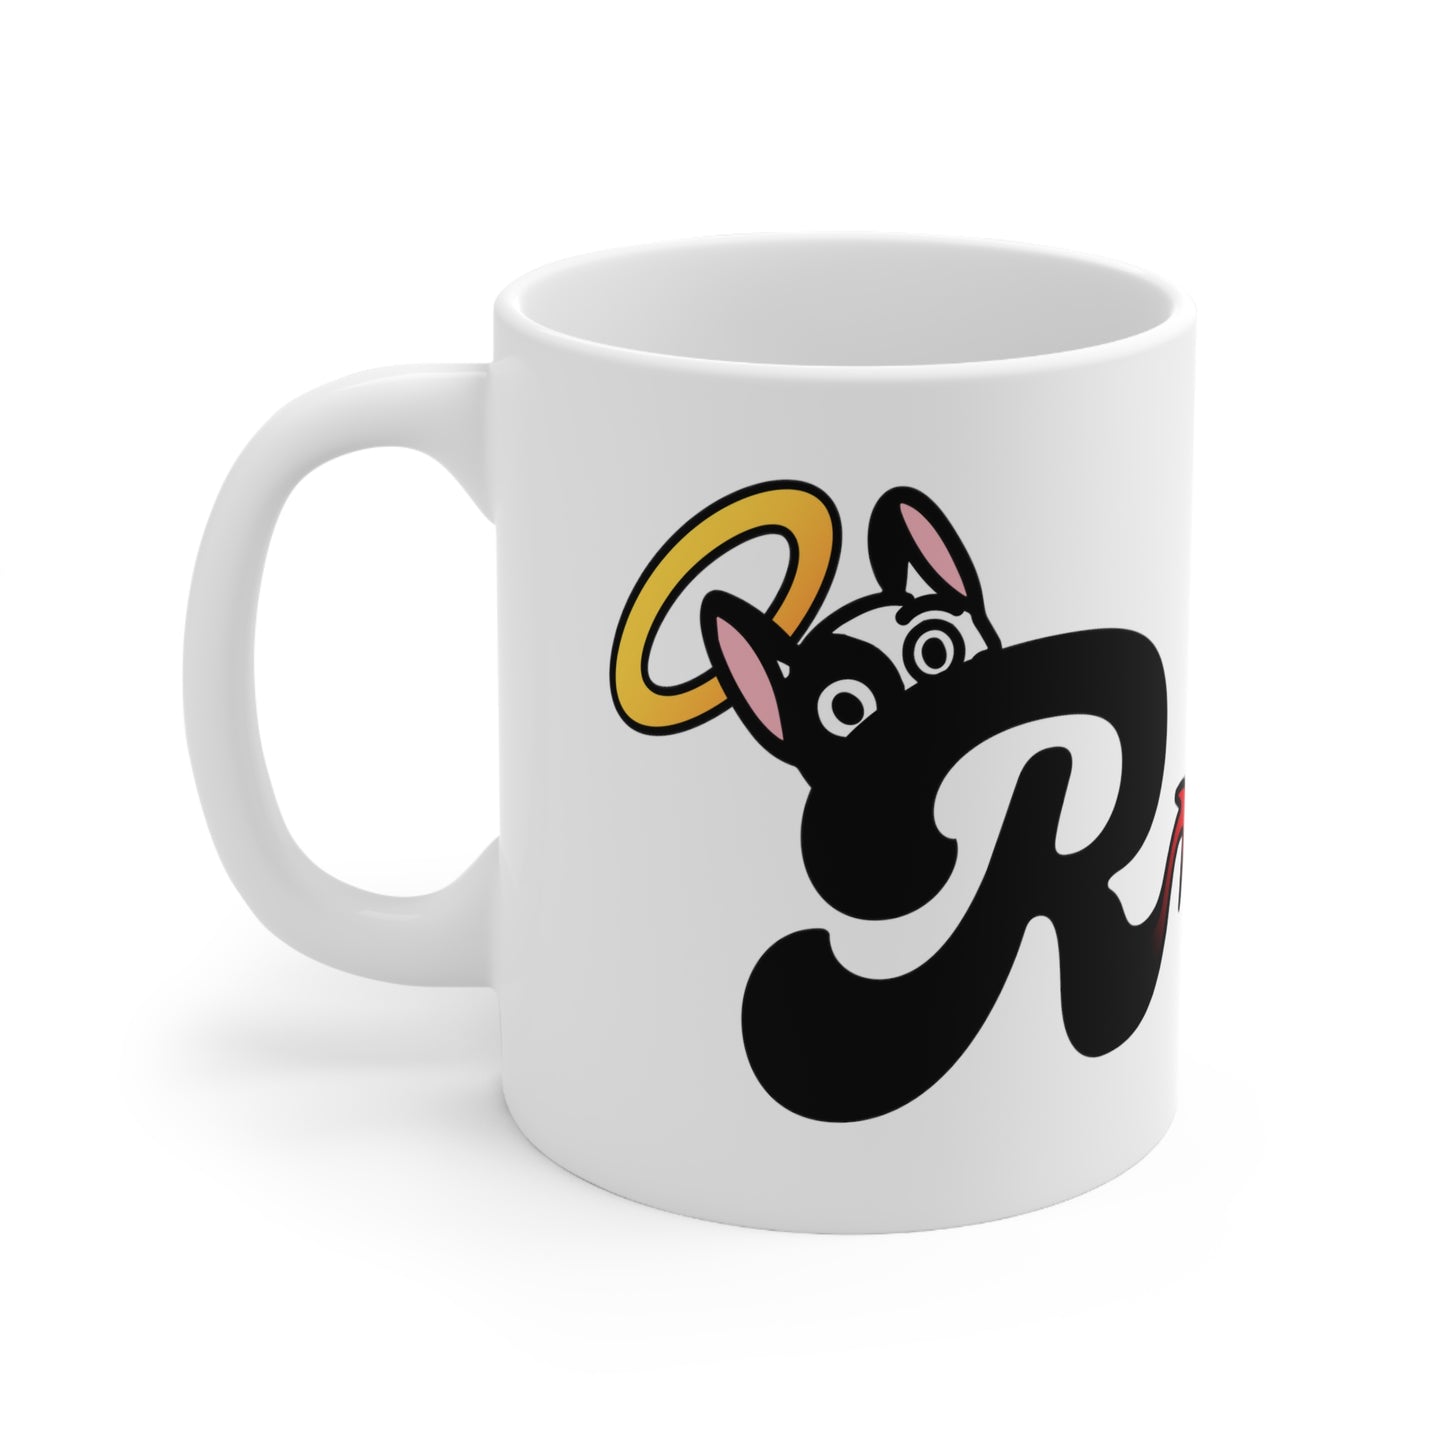 R is for Ralphie Mug